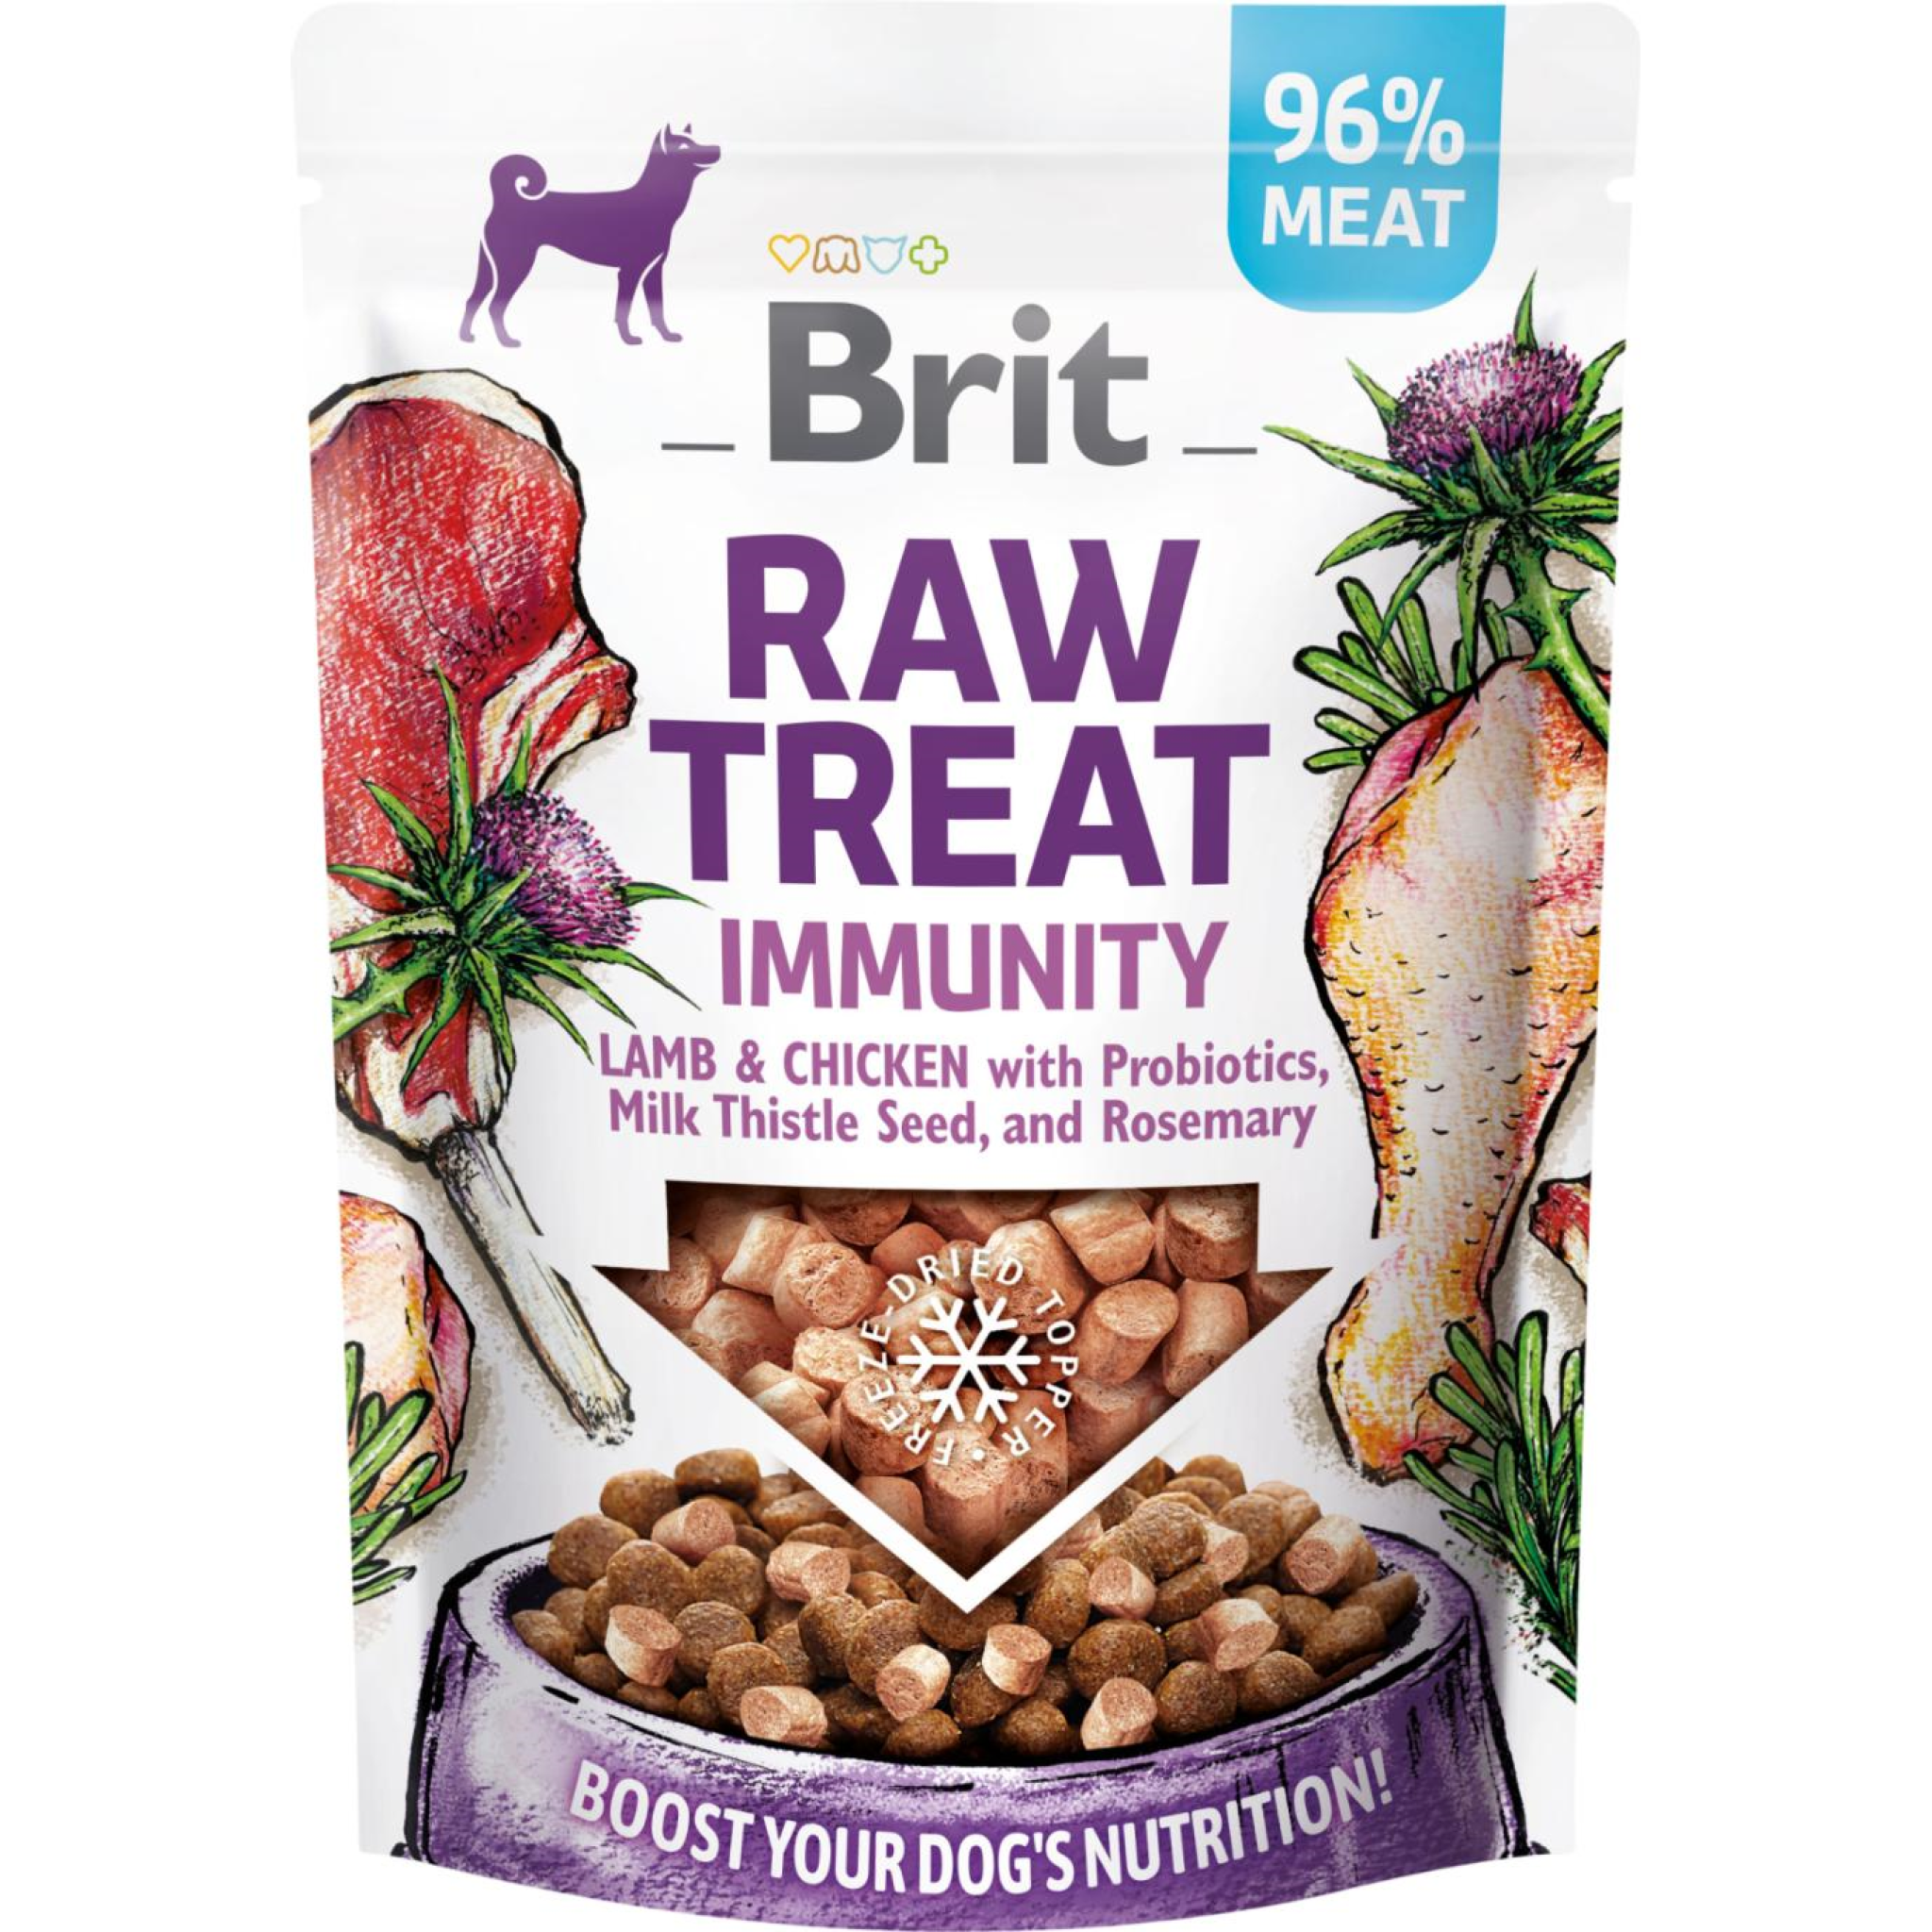 Billede af Eldorado - Brit RAW TREAT Immunity 40g - Dog Treats